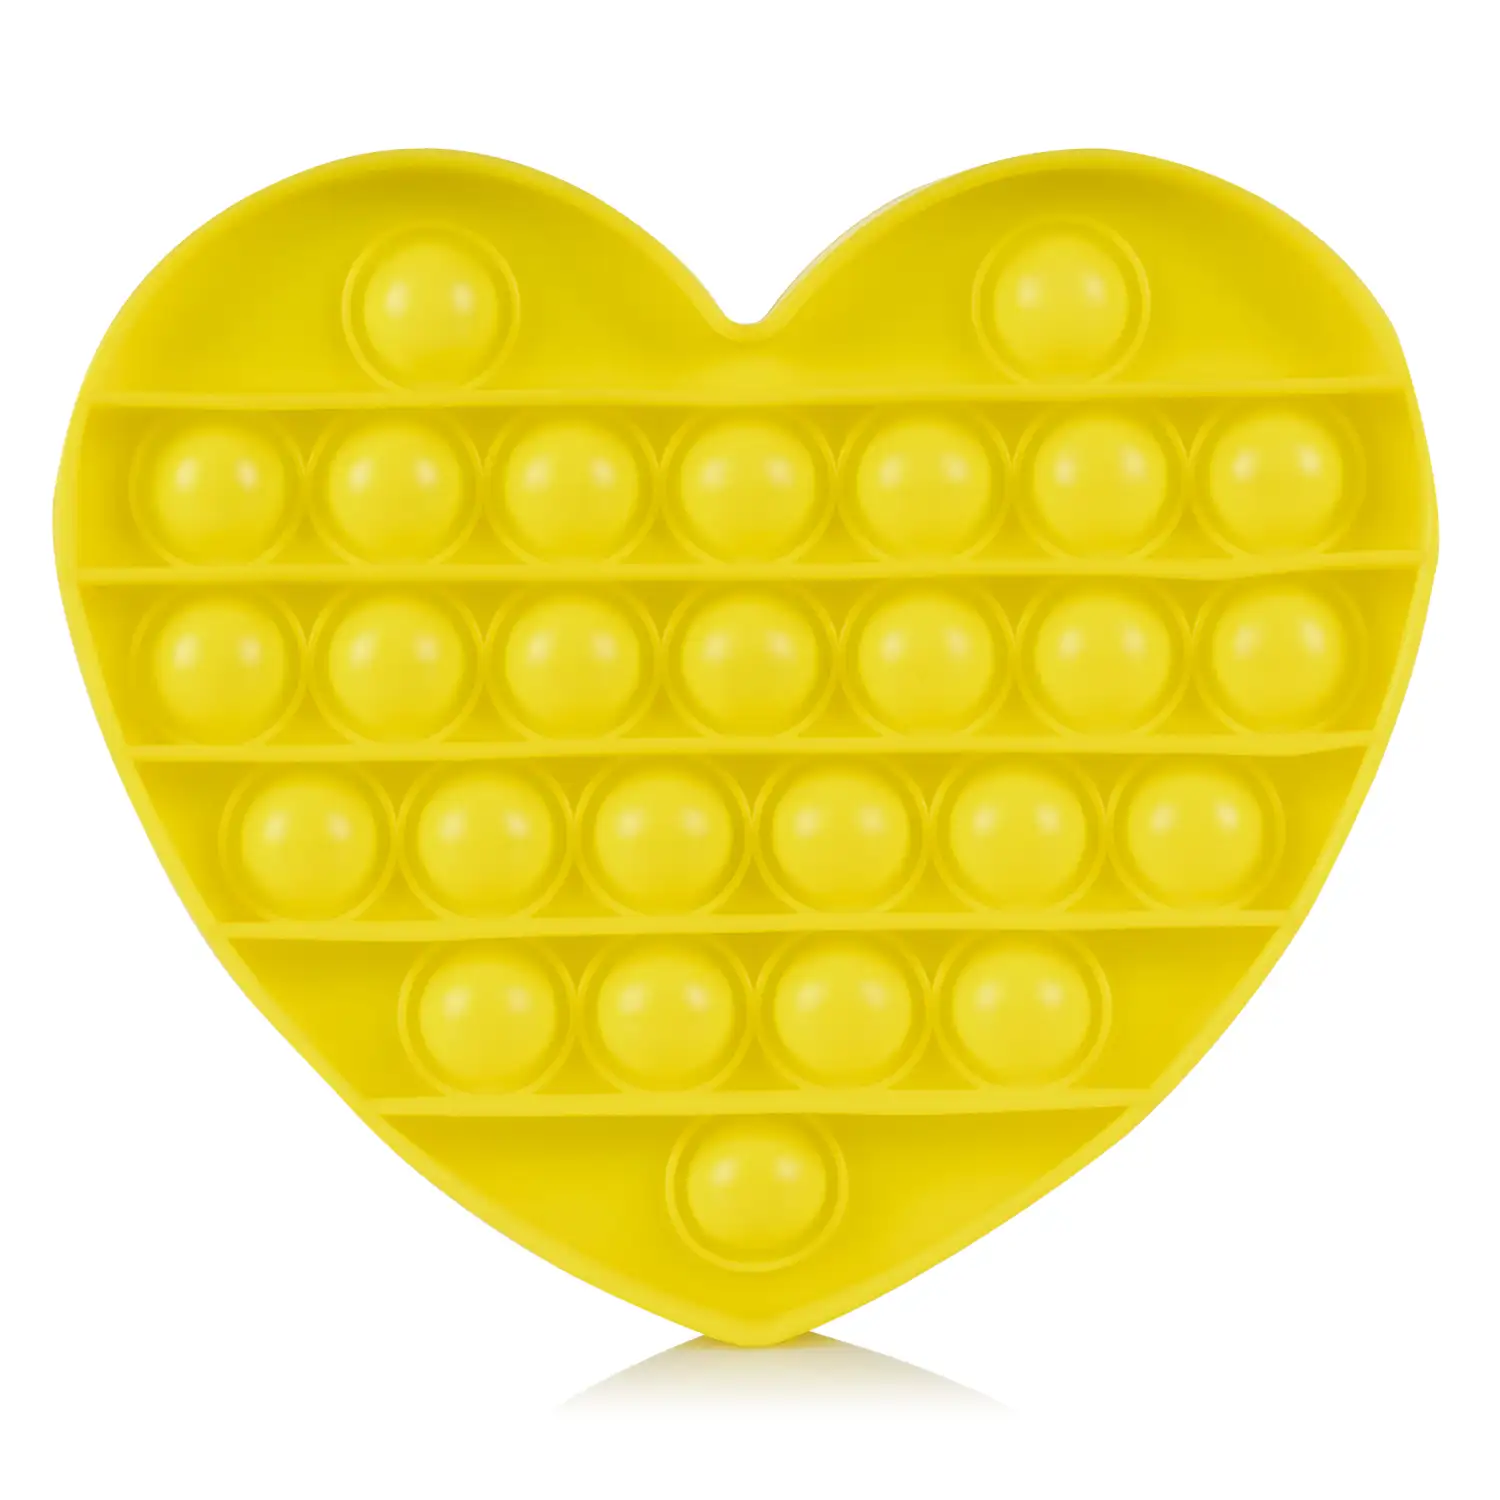 Bubble Pop It juguete sensitivo desestresante, burbujas de silicona para apretar y pulsar. Diseño corazón.